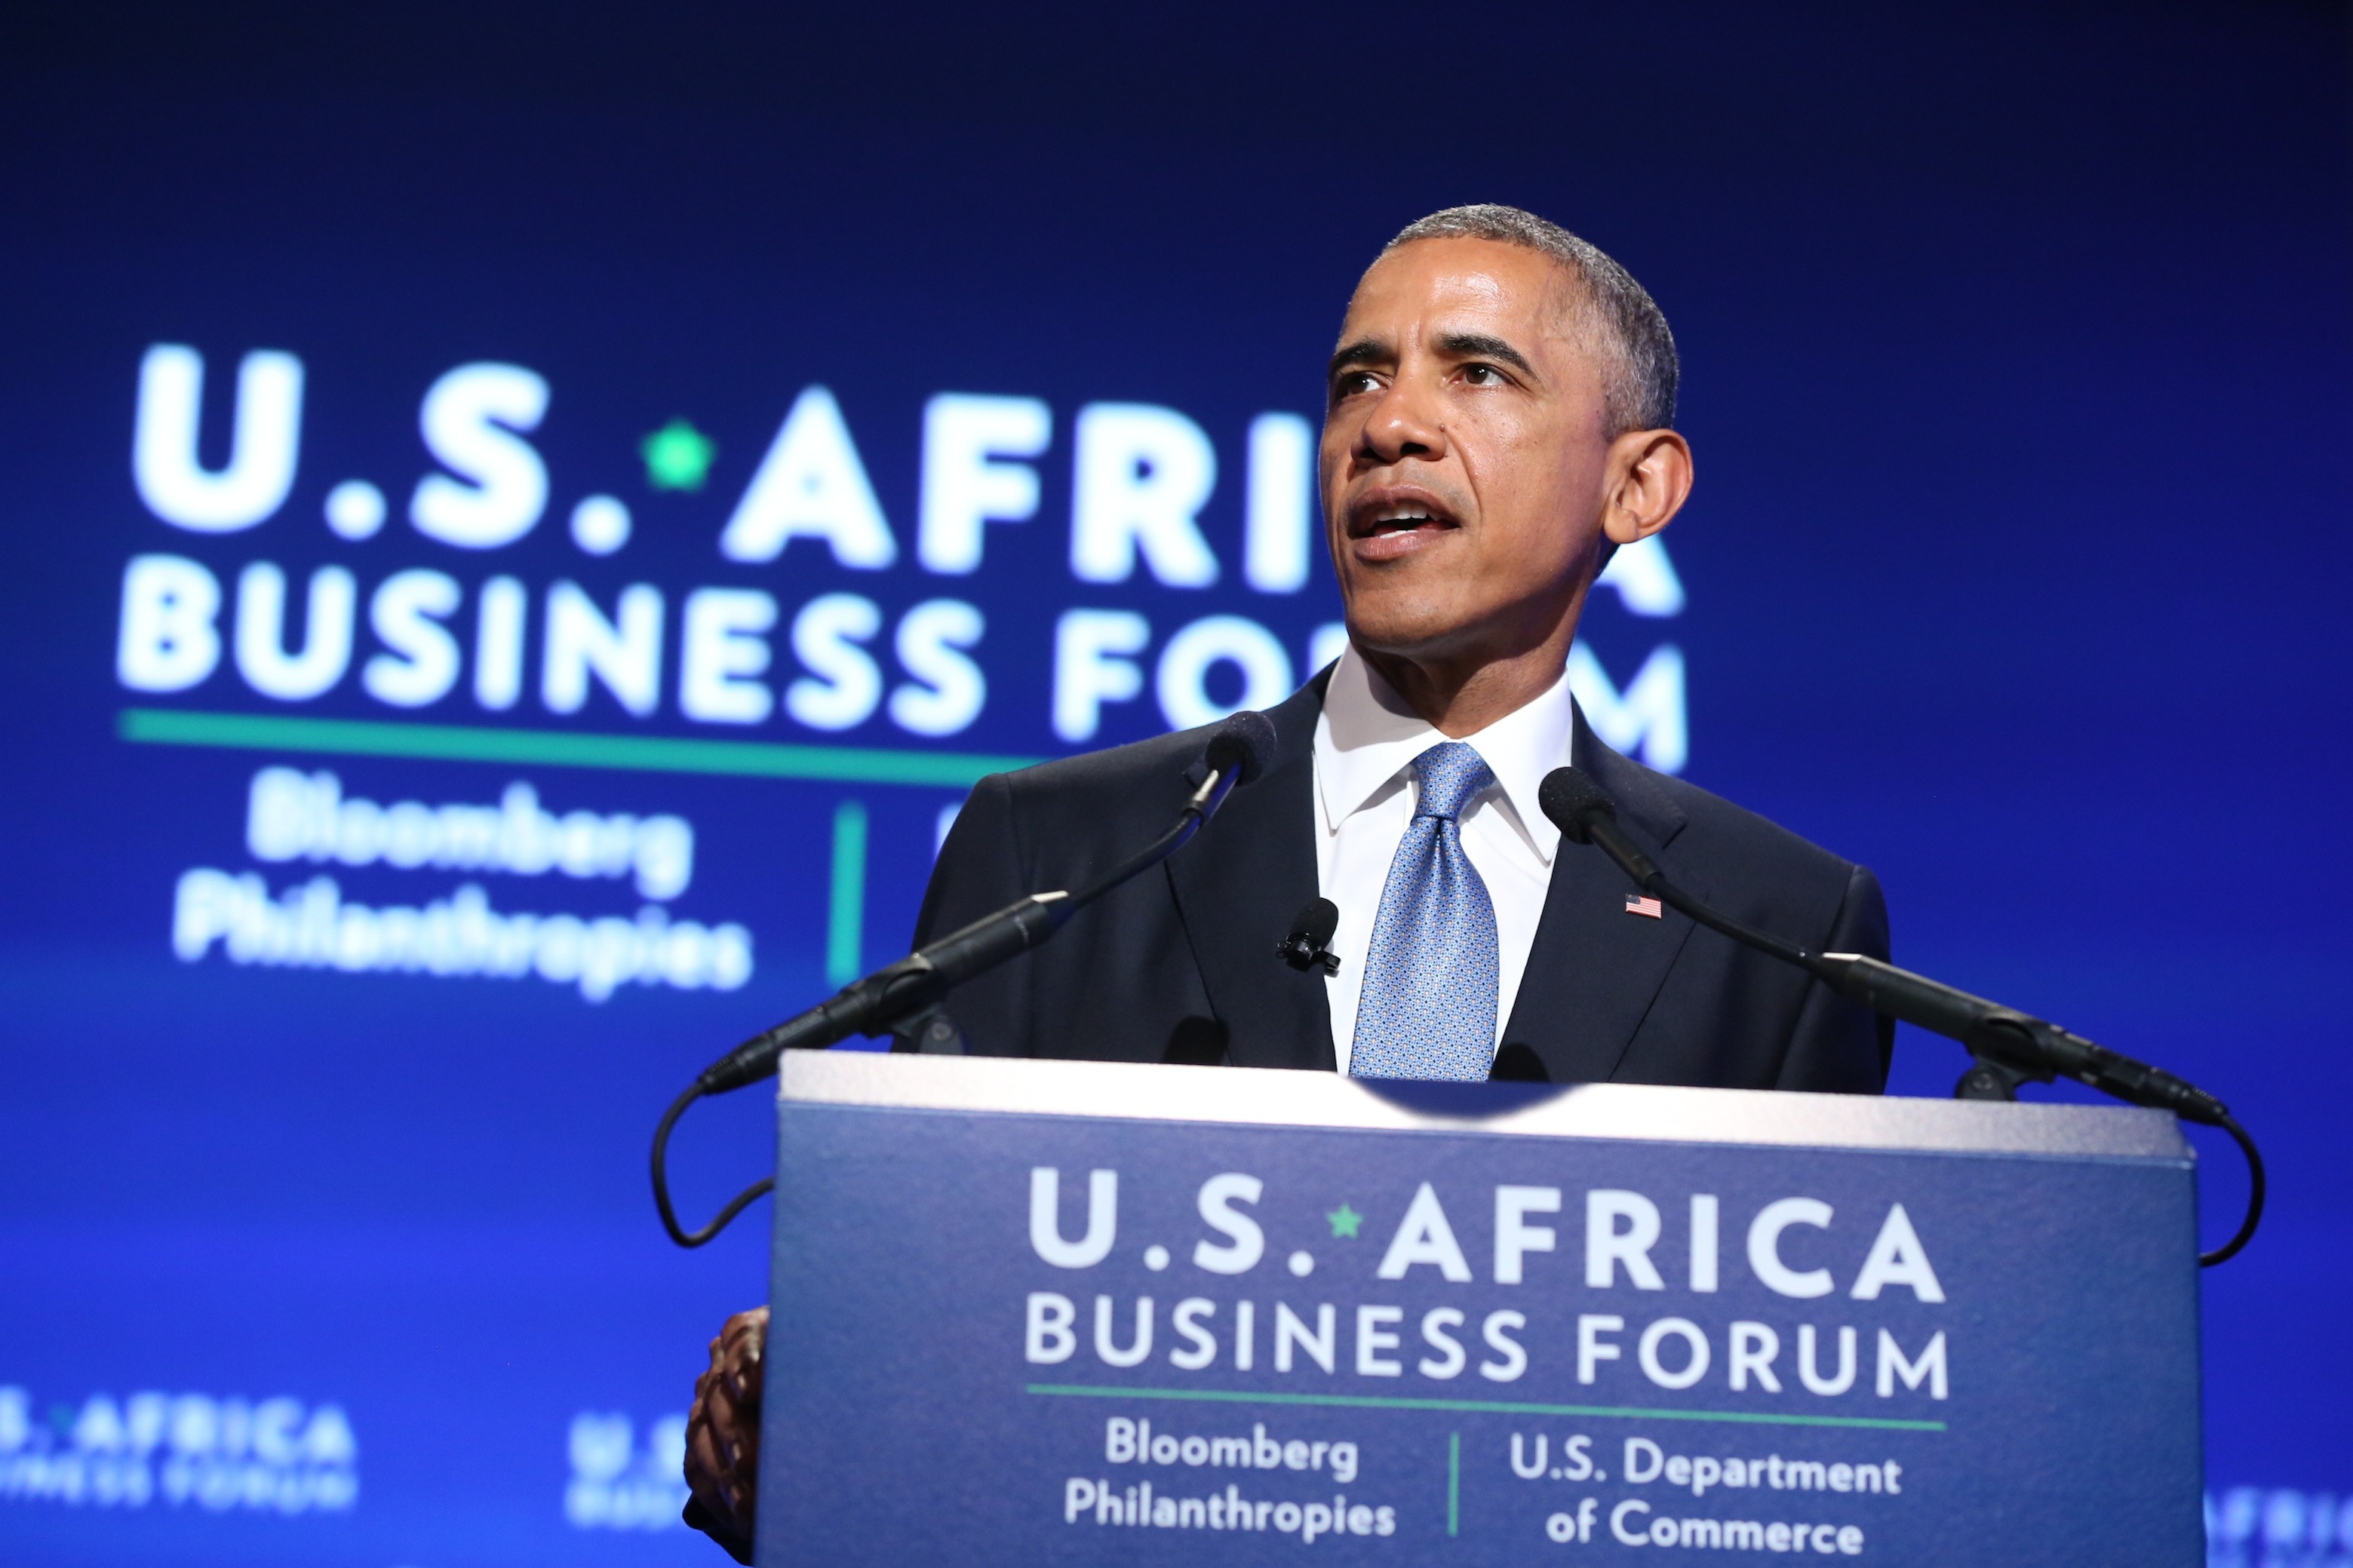 Le Président Obama au Forum des Affaires Etats-Unis/Afrique ©DR